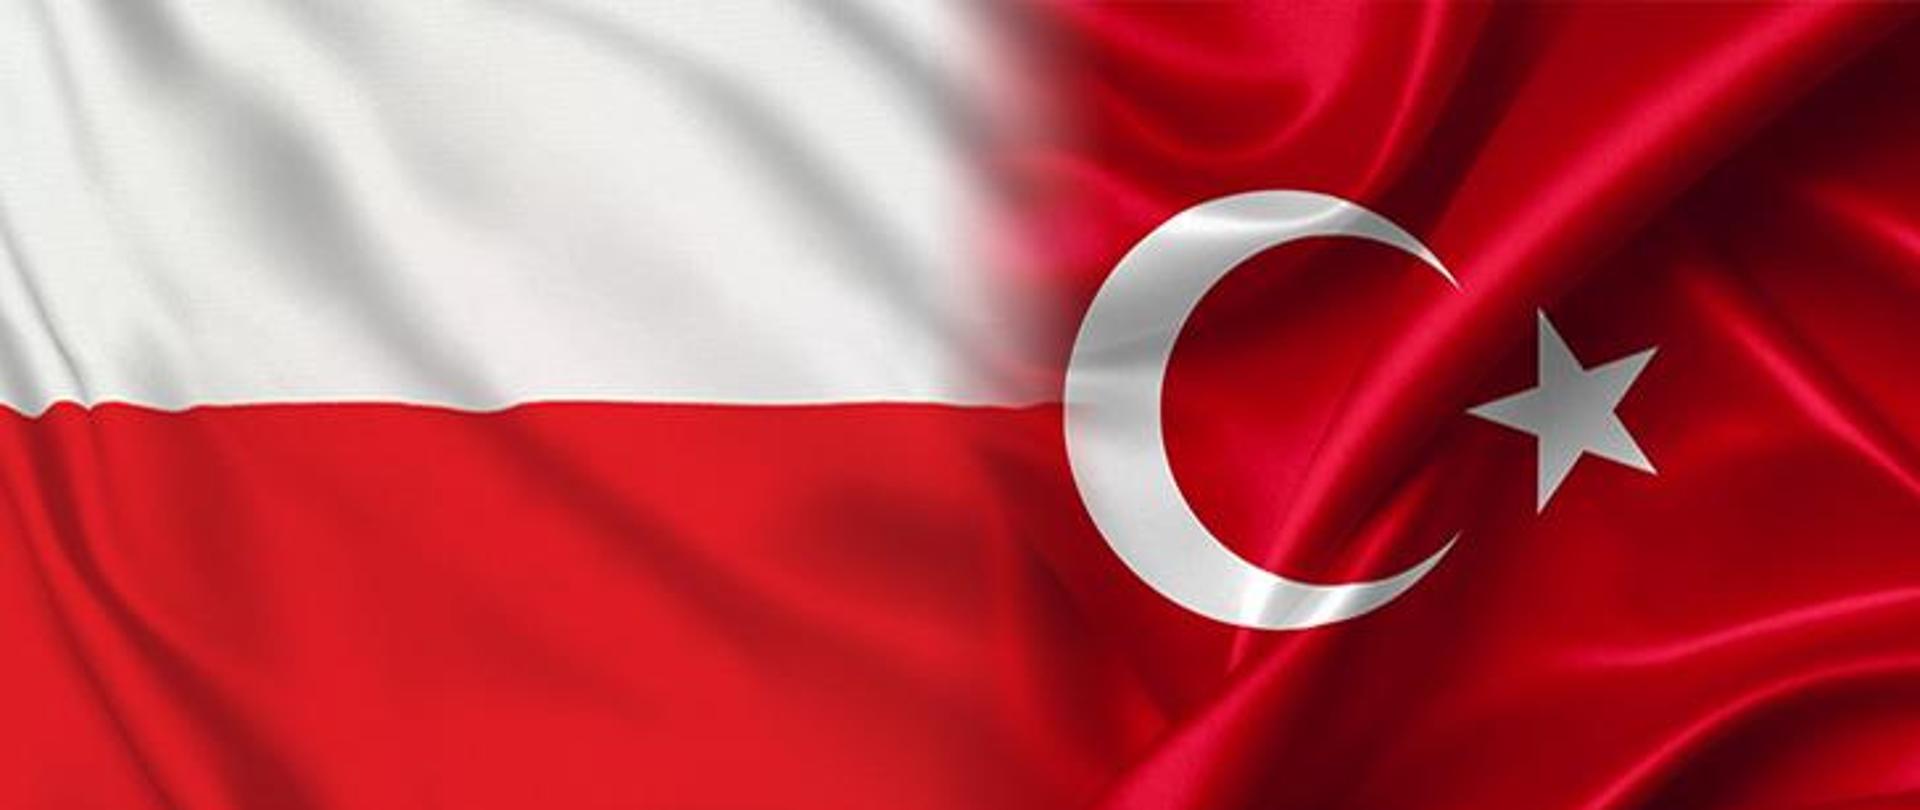 Flaga Turcji. Na czerwonym tle znak półksiężyca i gwiazdy w białych kolorach